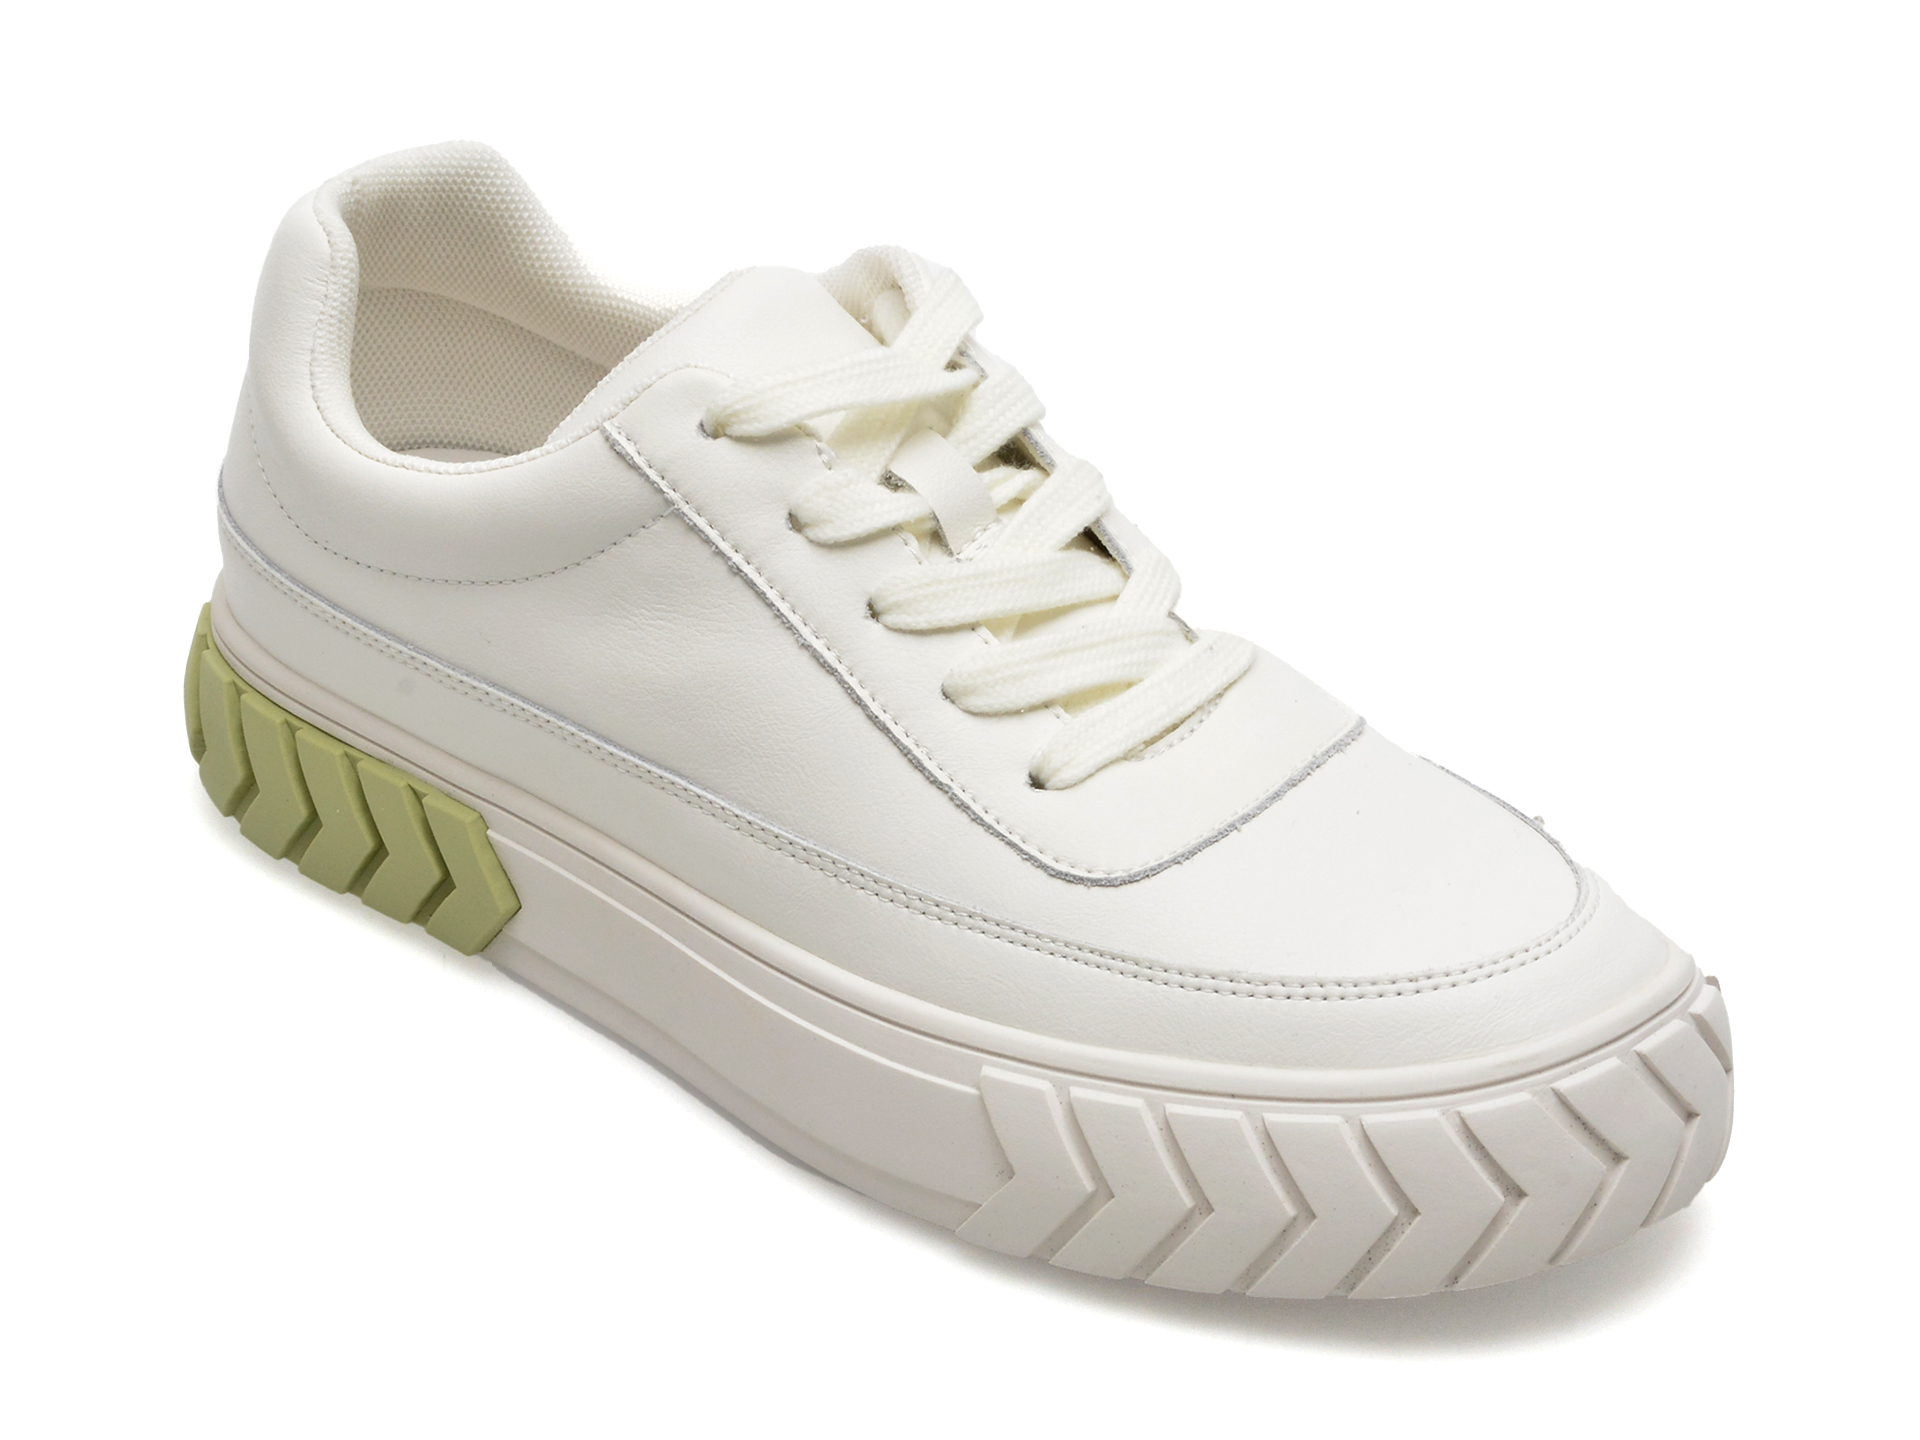 Pantofi EPICA albi, 226026, din piele naturala femei 2023-09-21